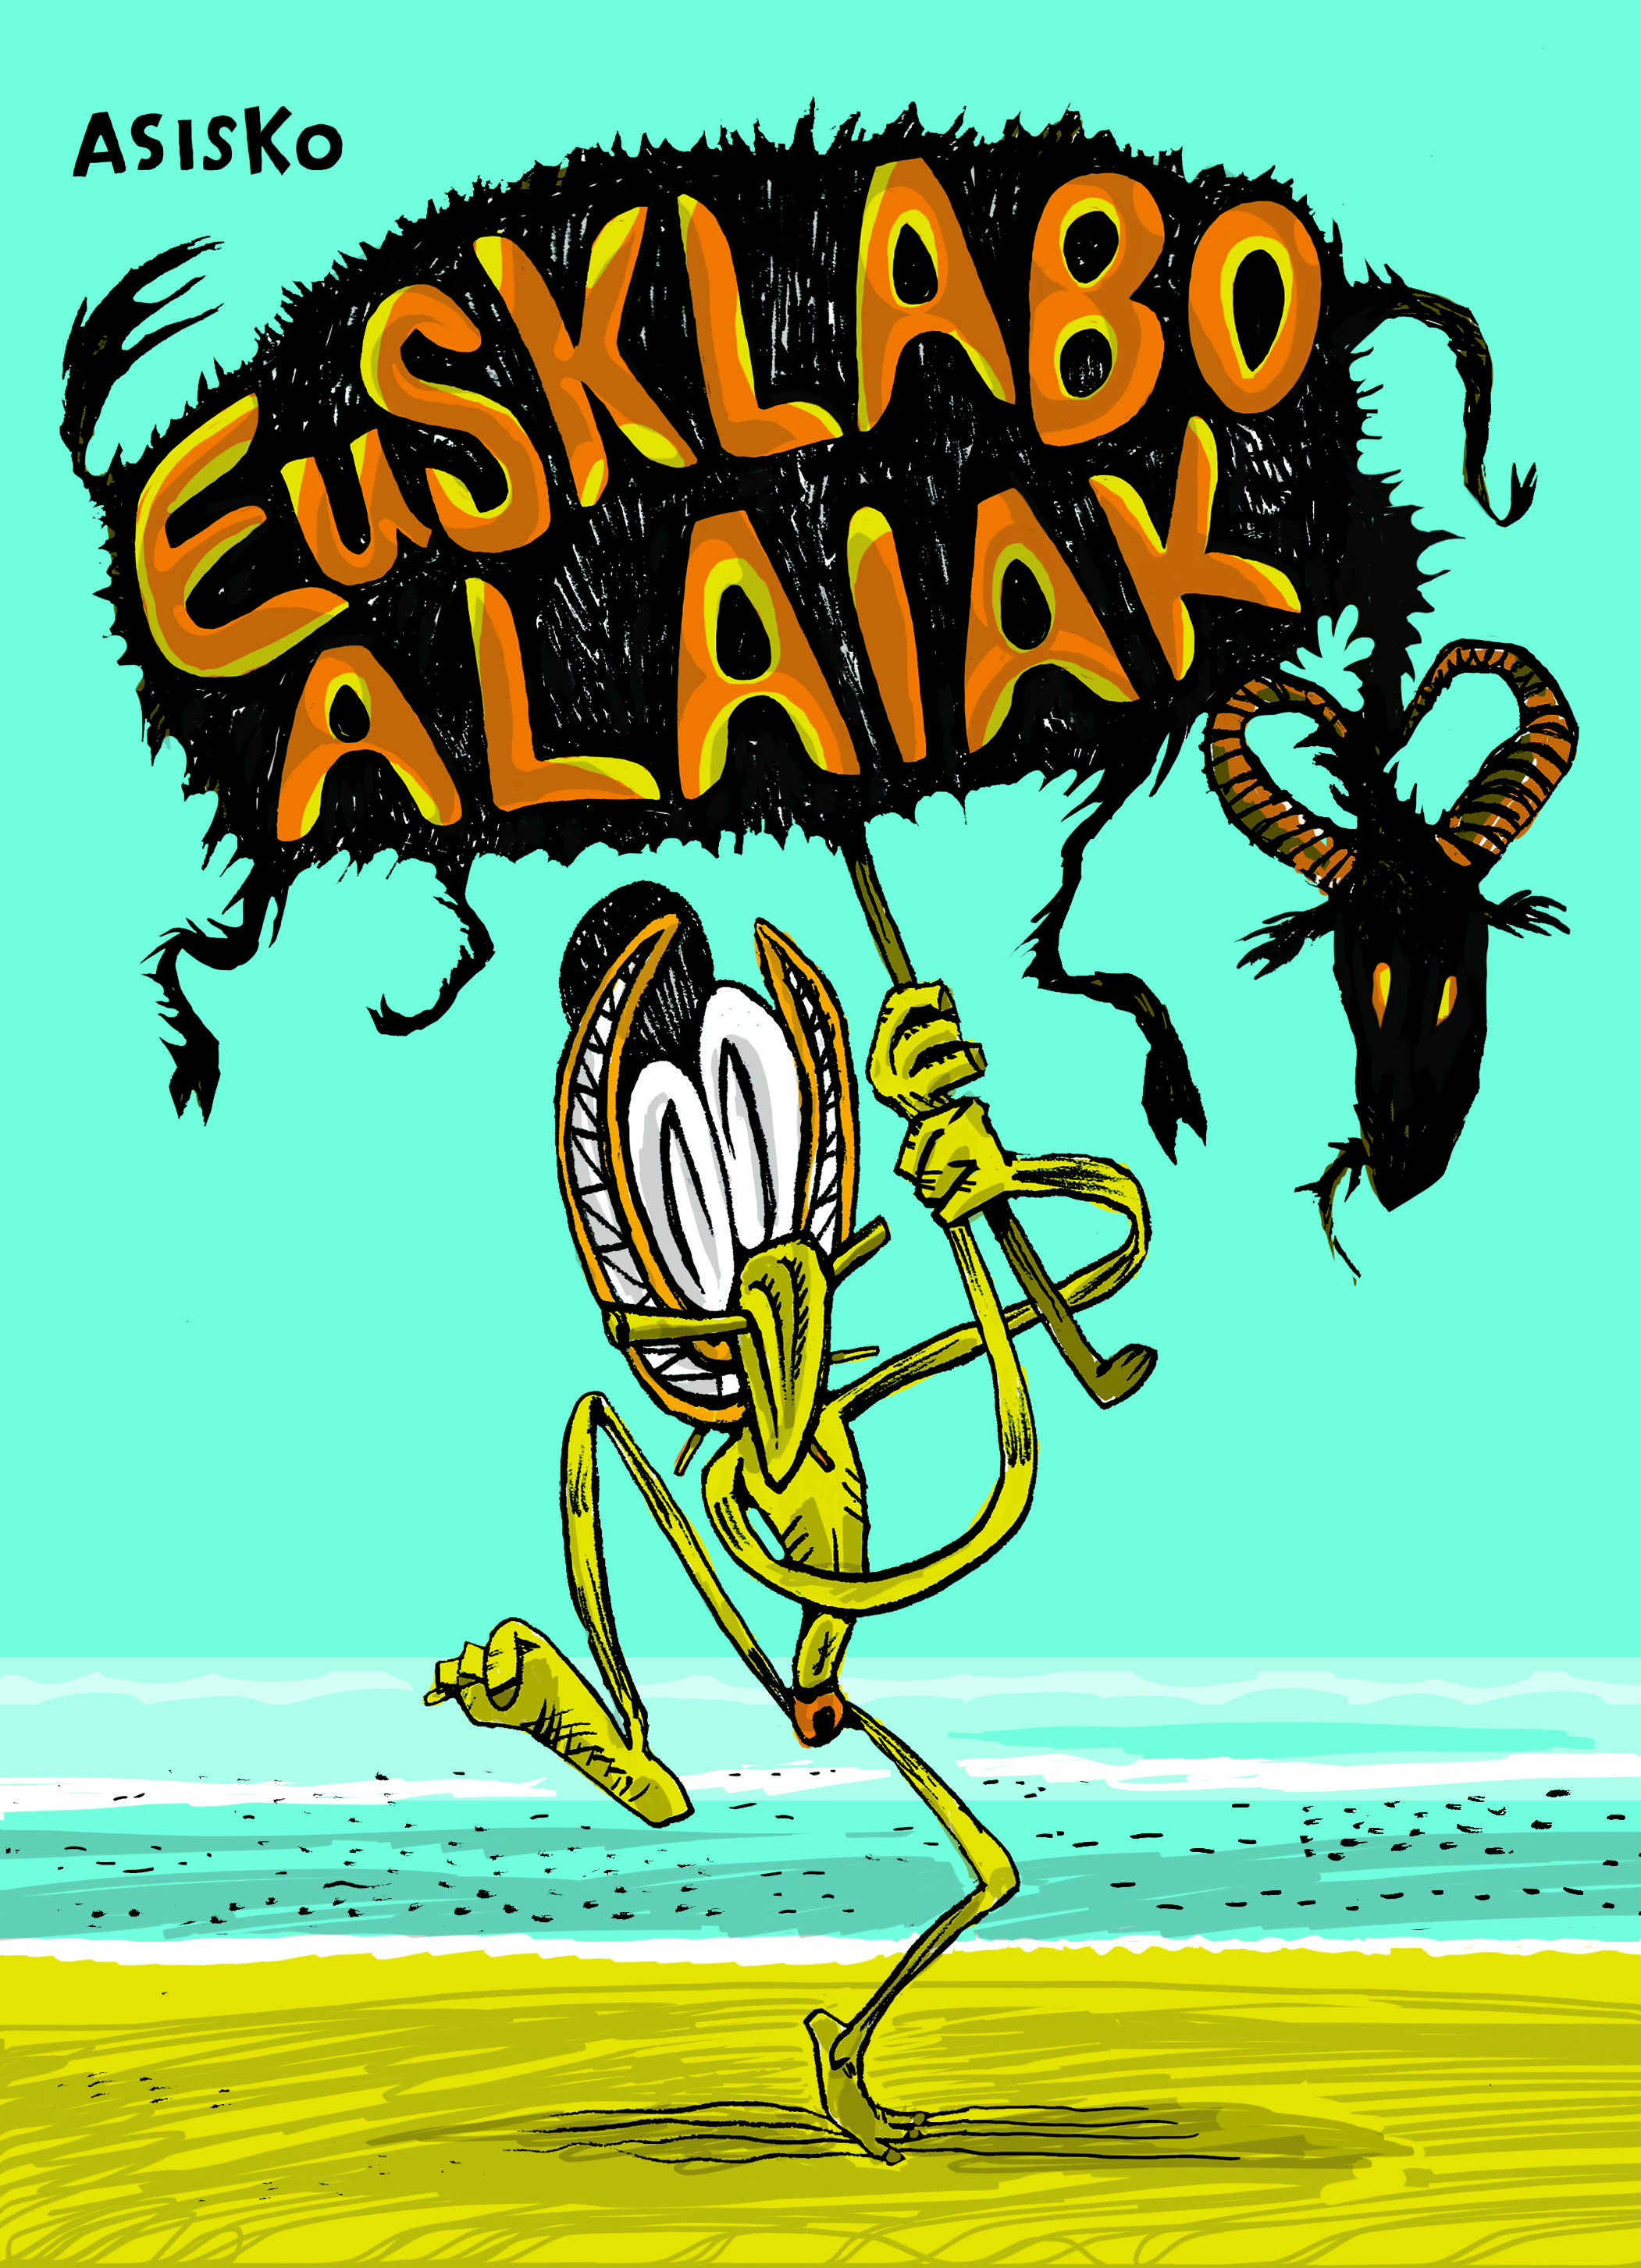 "Eusklabo alaiak", Asiskoren komiki berria